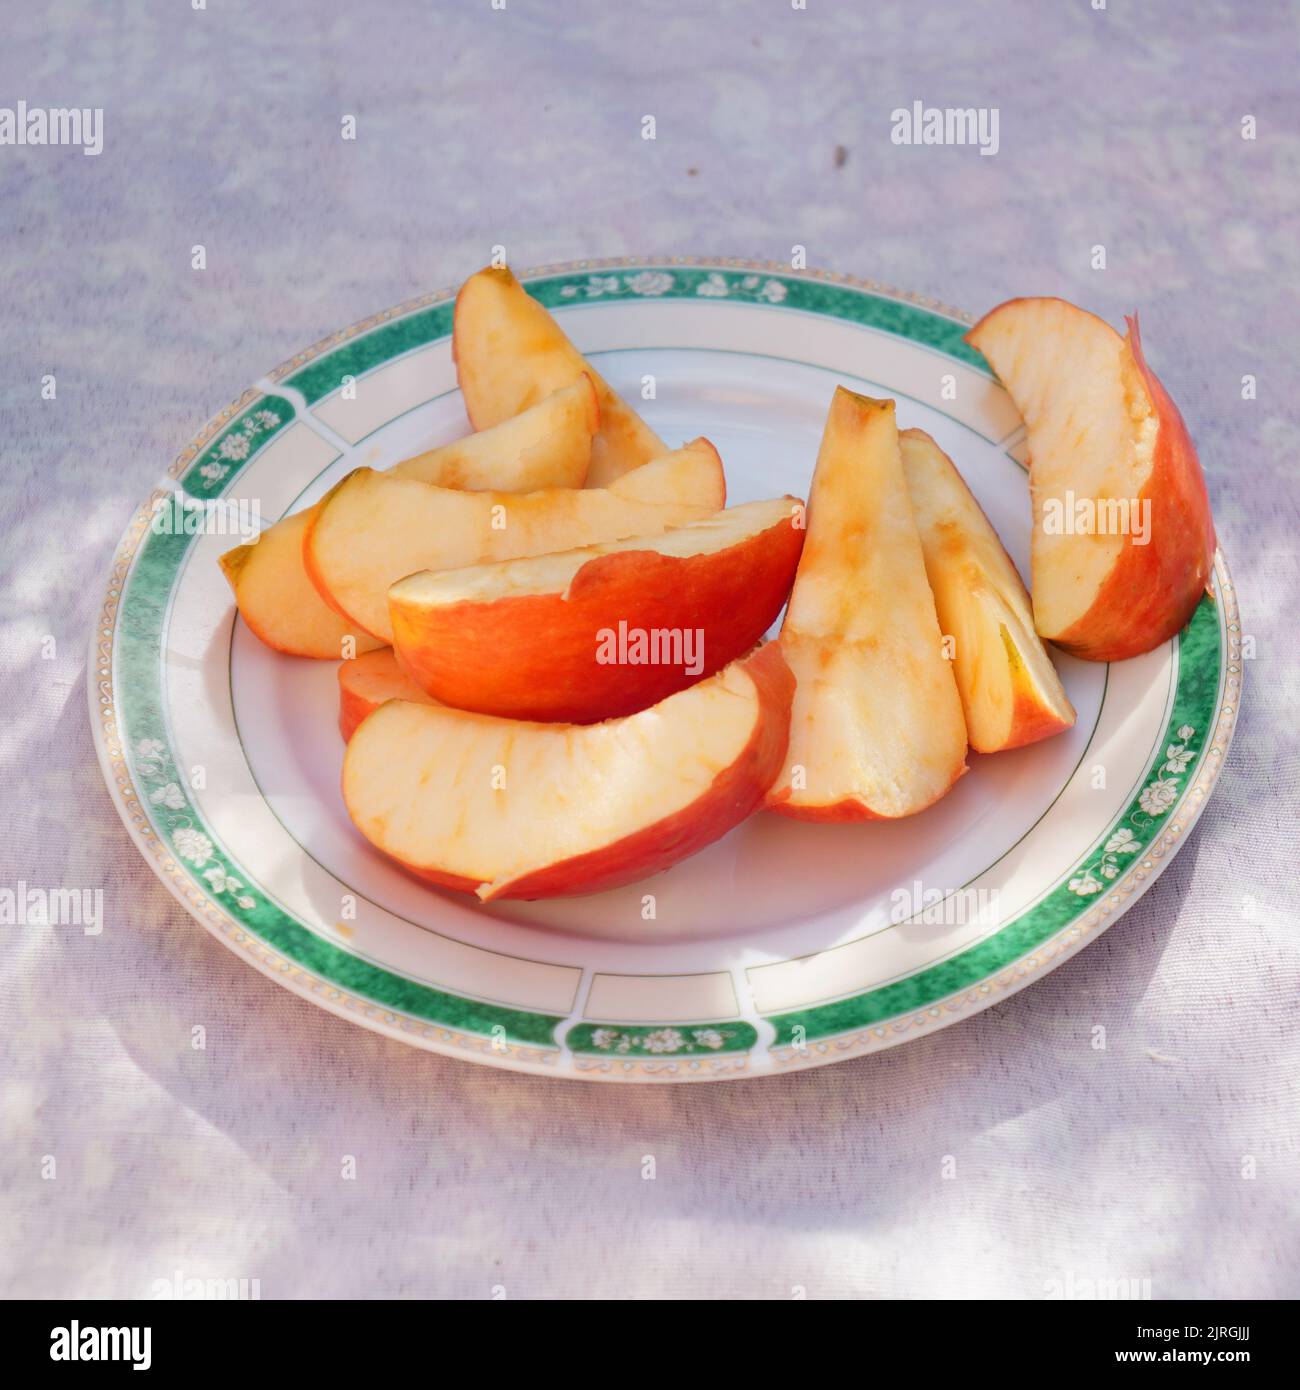 Schneiden Sie kleine Stücke eines frischen Apfels, der an einem sonnigen Tag auf einem Teller serviert wird. Stockfoto